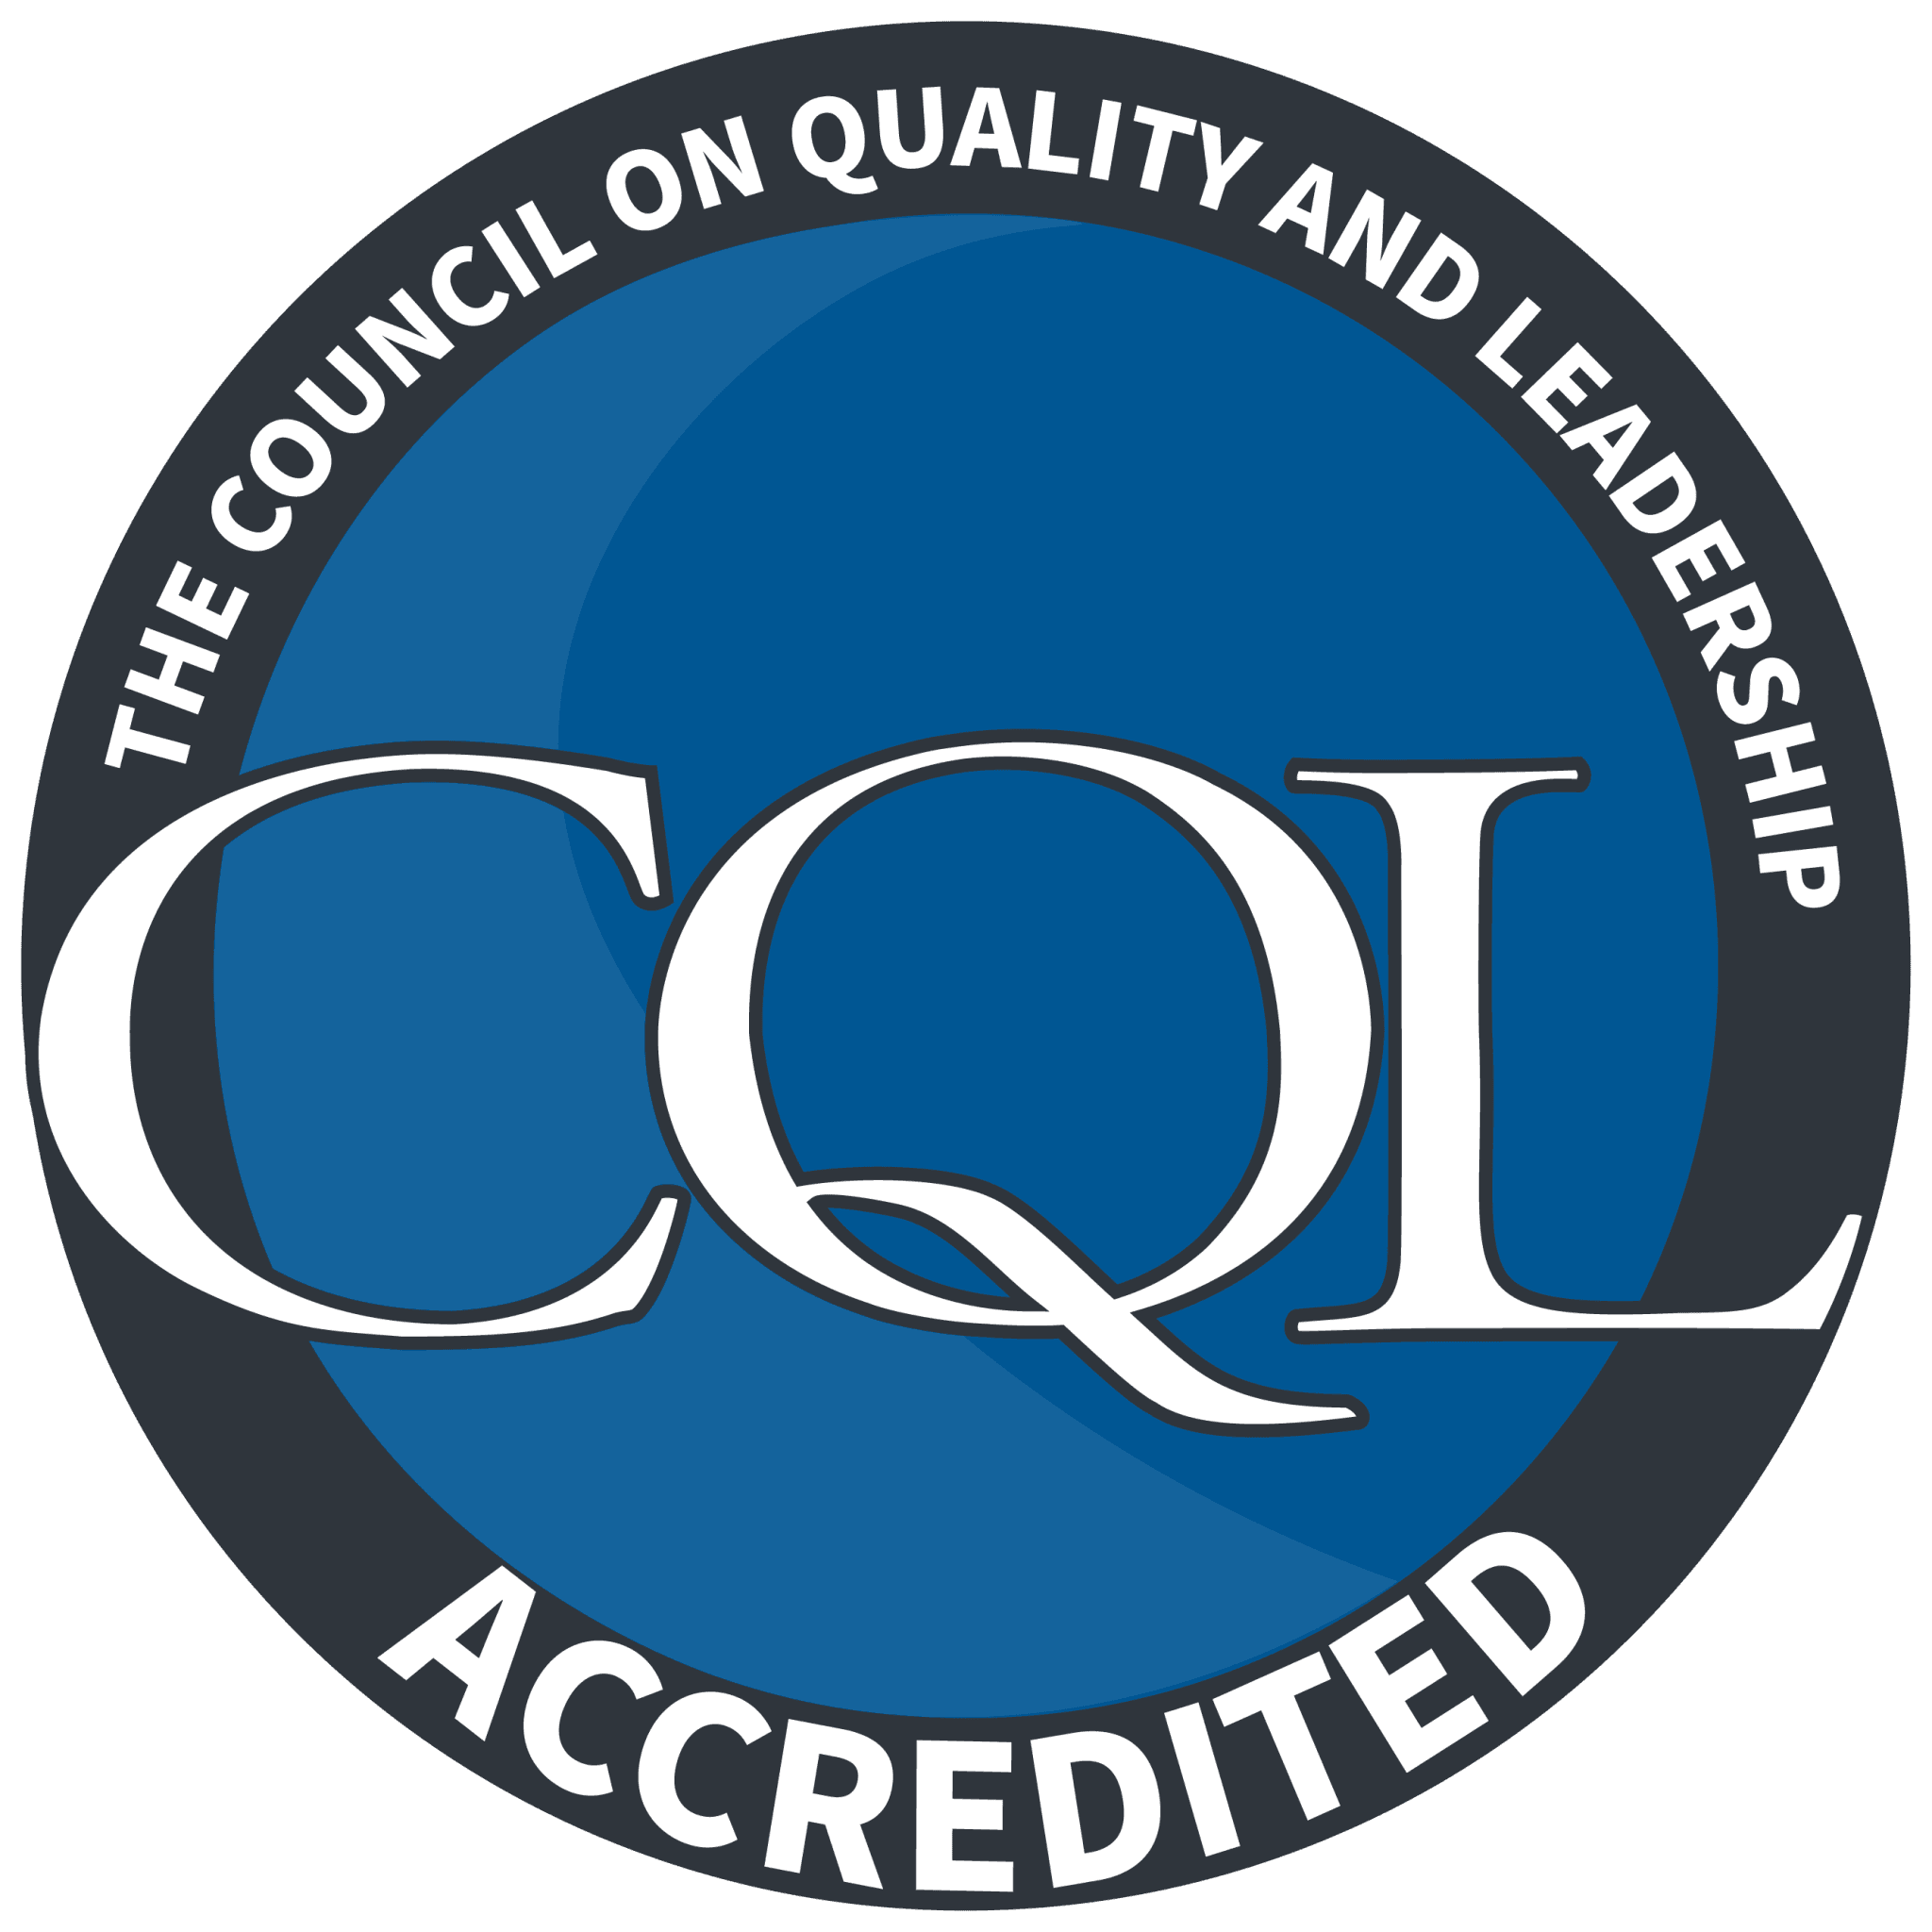 CQL Logo